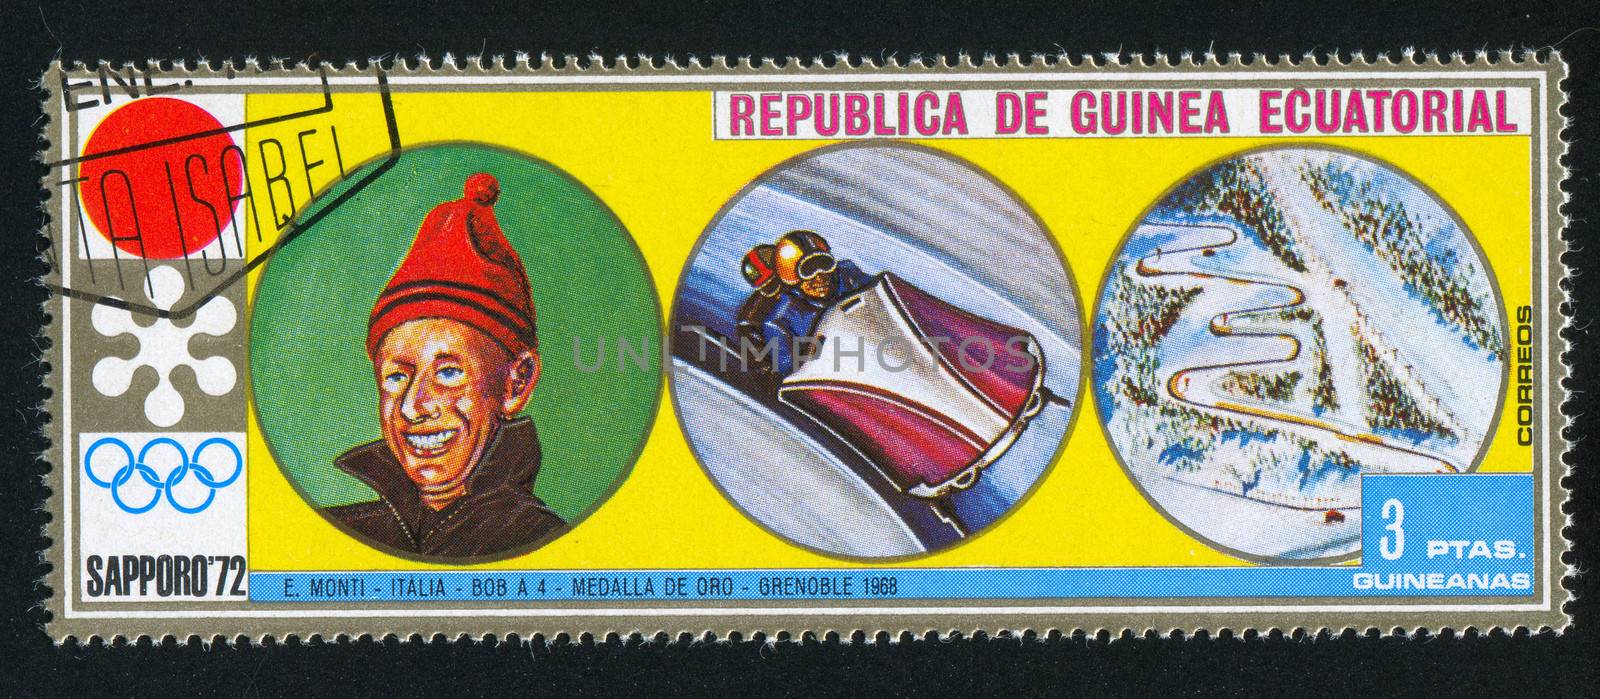 EQUATORIAL GUINEA - CIRCA 1972: stamp printed by Equatorial Guinea, shows Bobsleigh, circa 1972